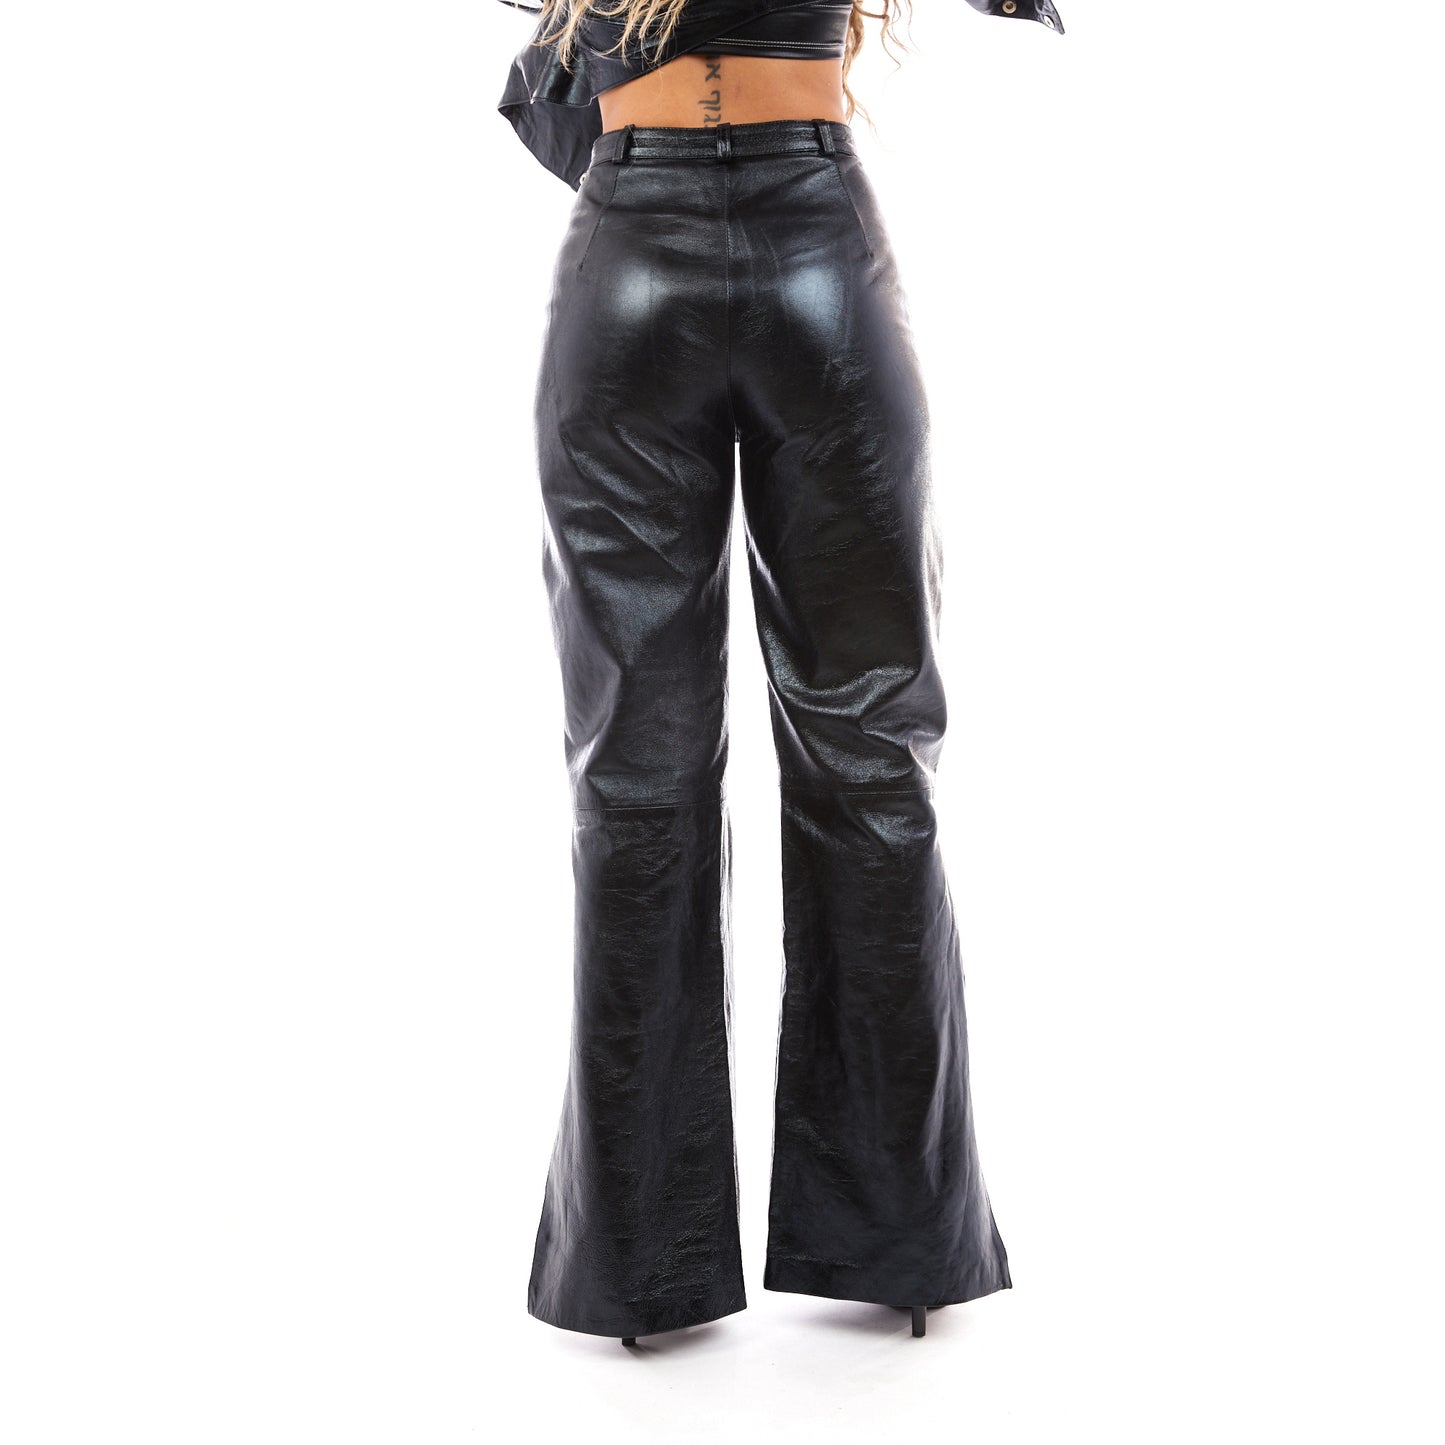 Venus Leather Pants (Black)